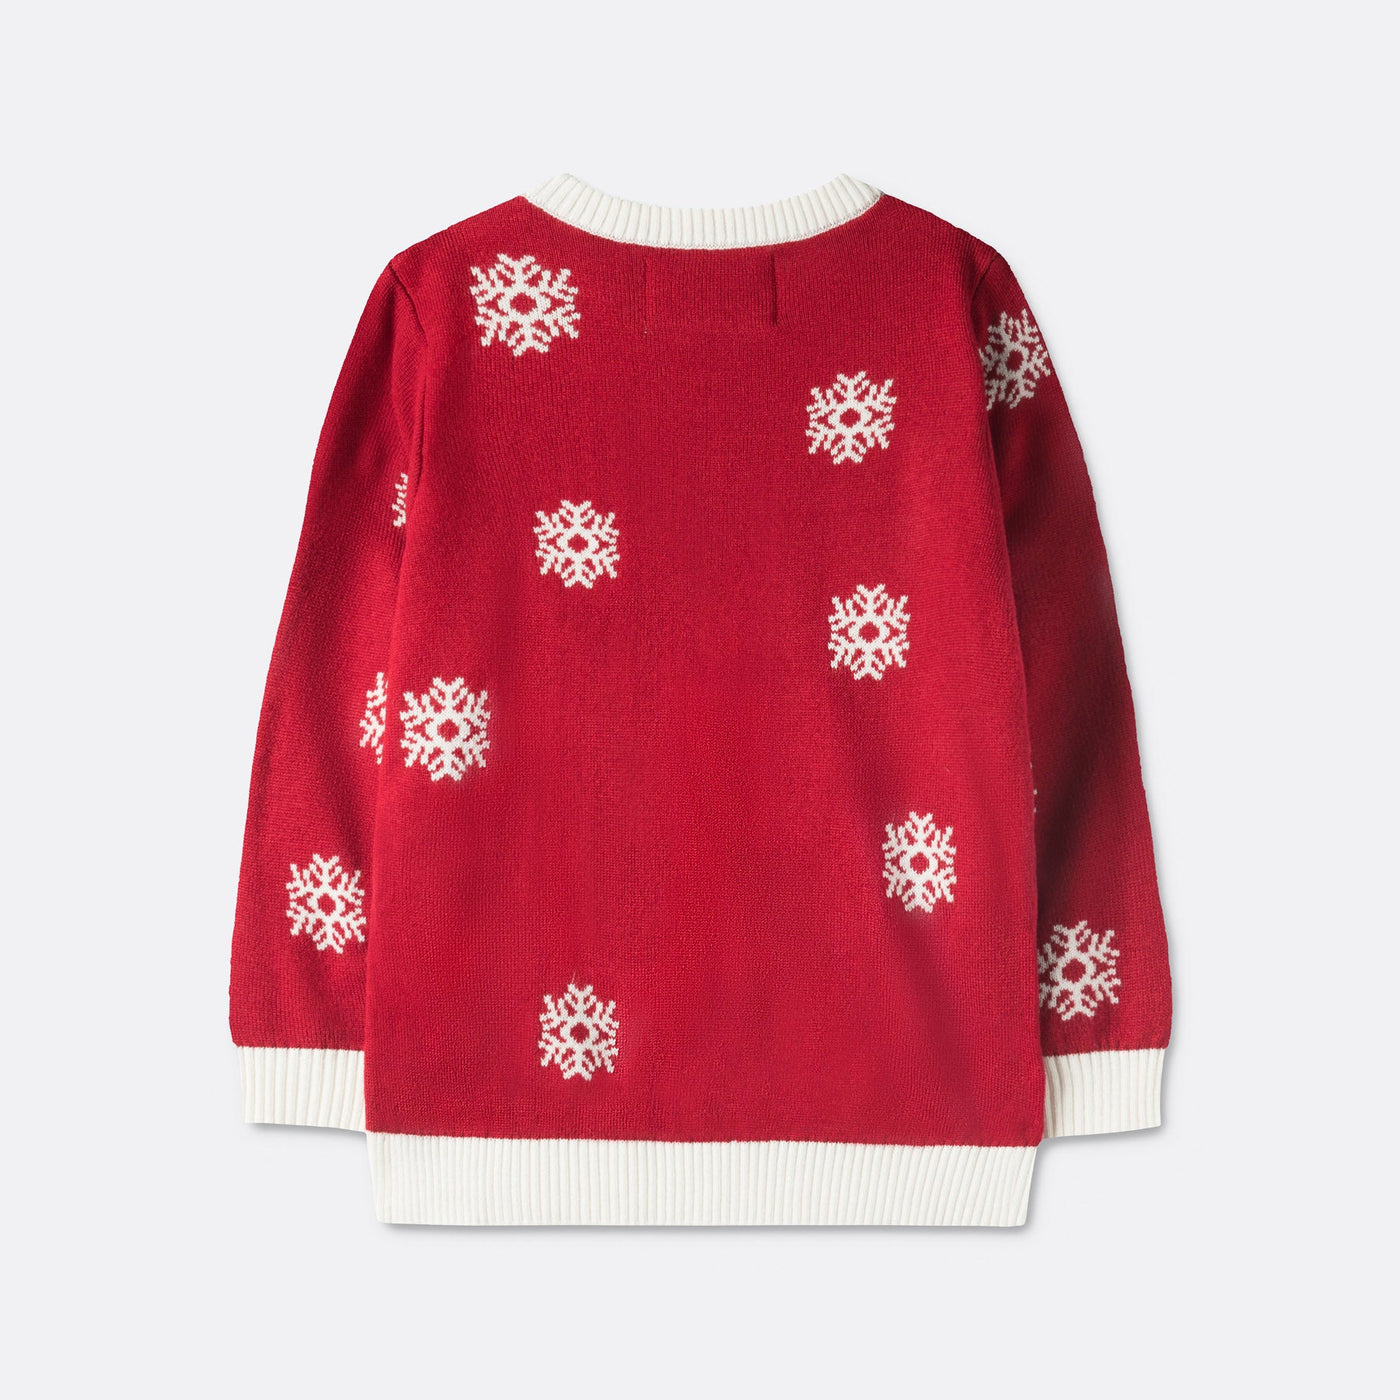 Kids' Cute Reindeer Christmas Sweater